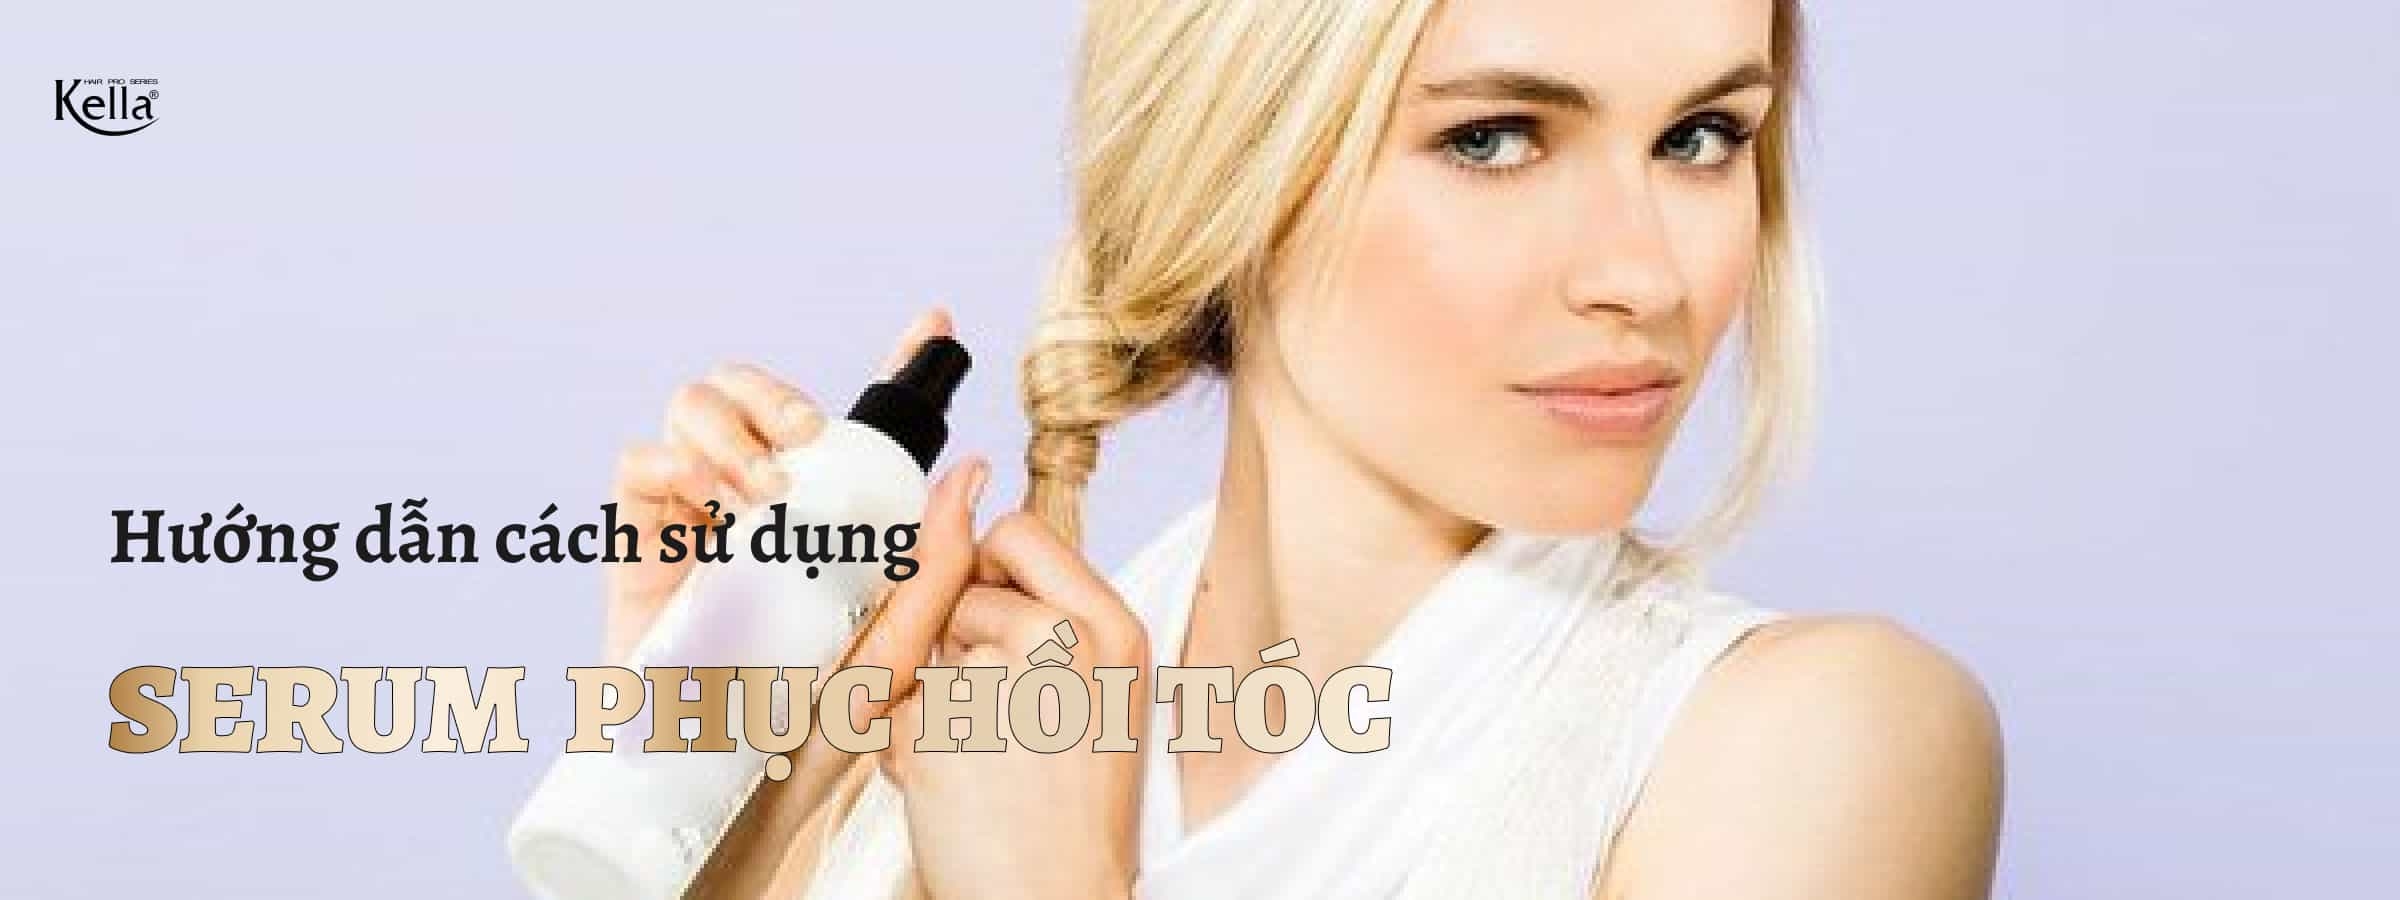 Hướng dẫn cách sử dụng serum phục hồi tóc hư tổn đúng cách